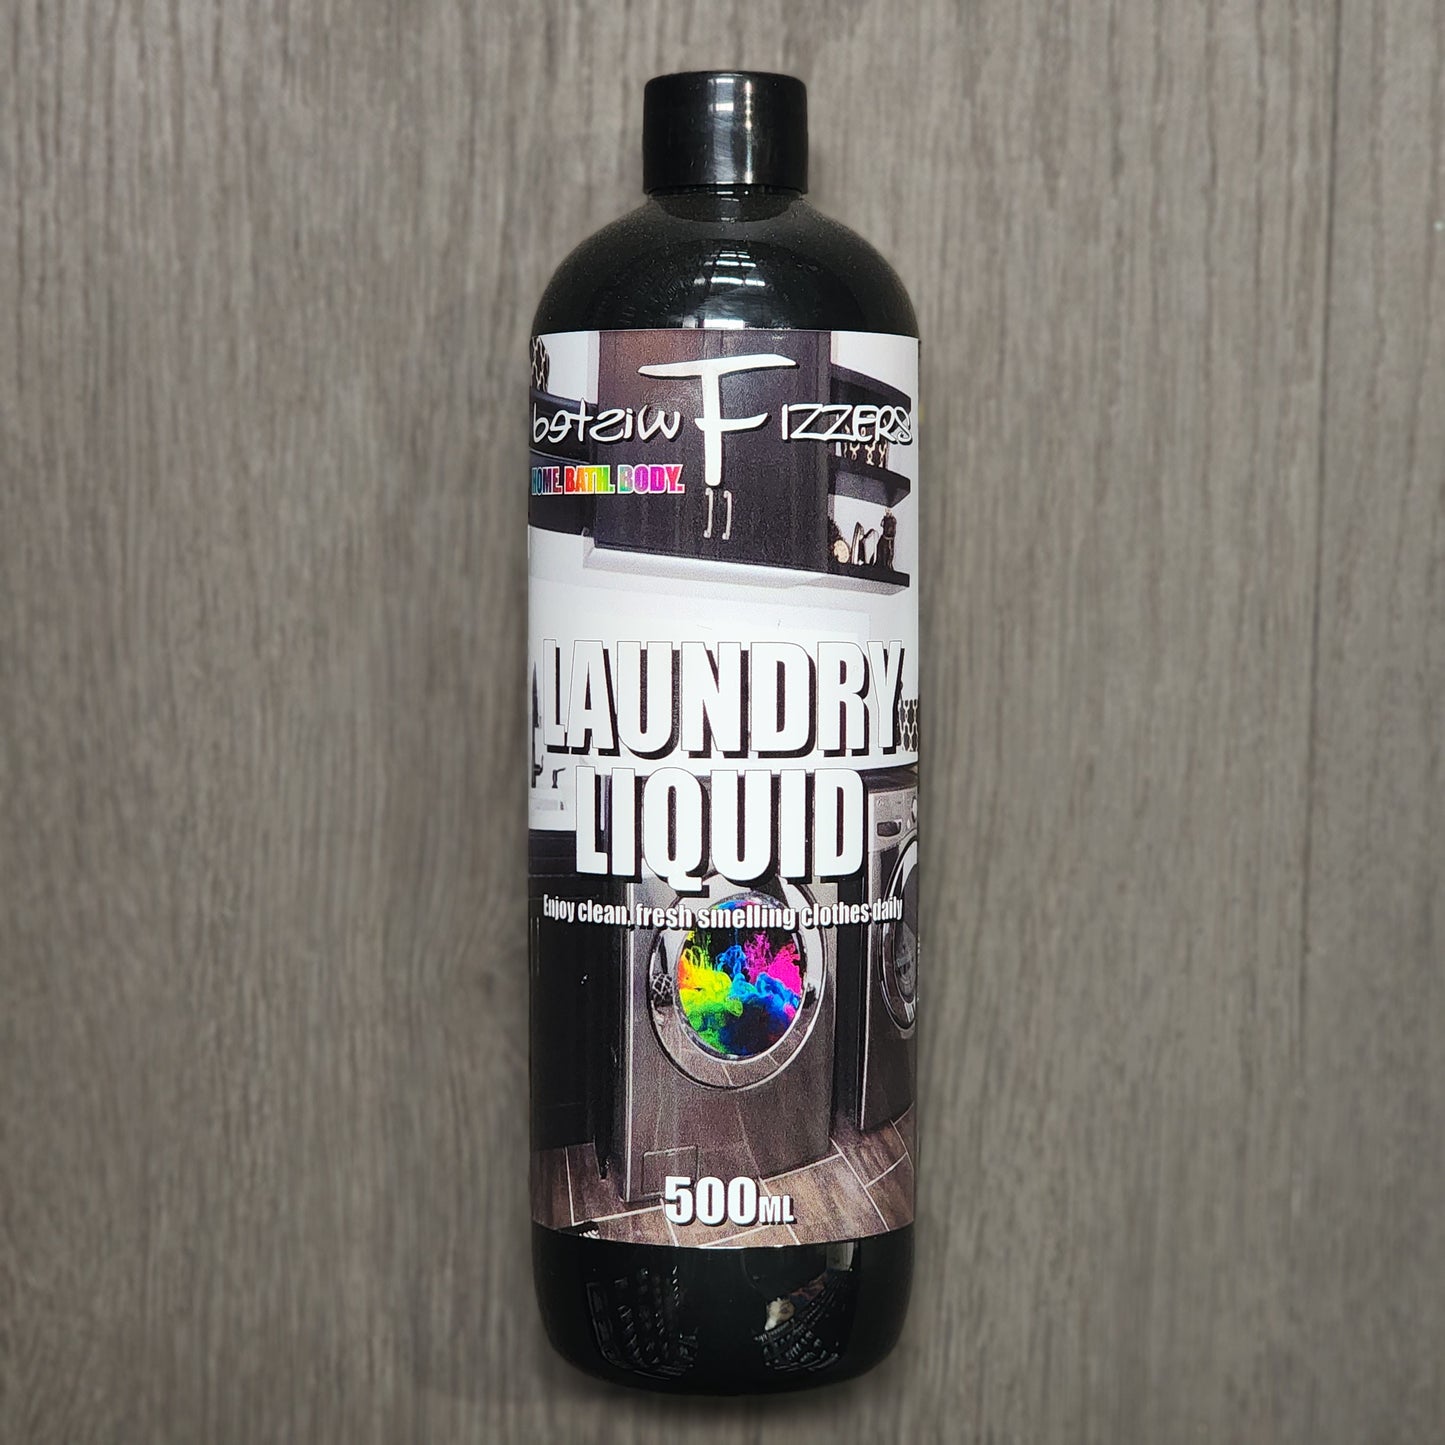 Laundry LIQUID triple concentrate - 500ml Bottle